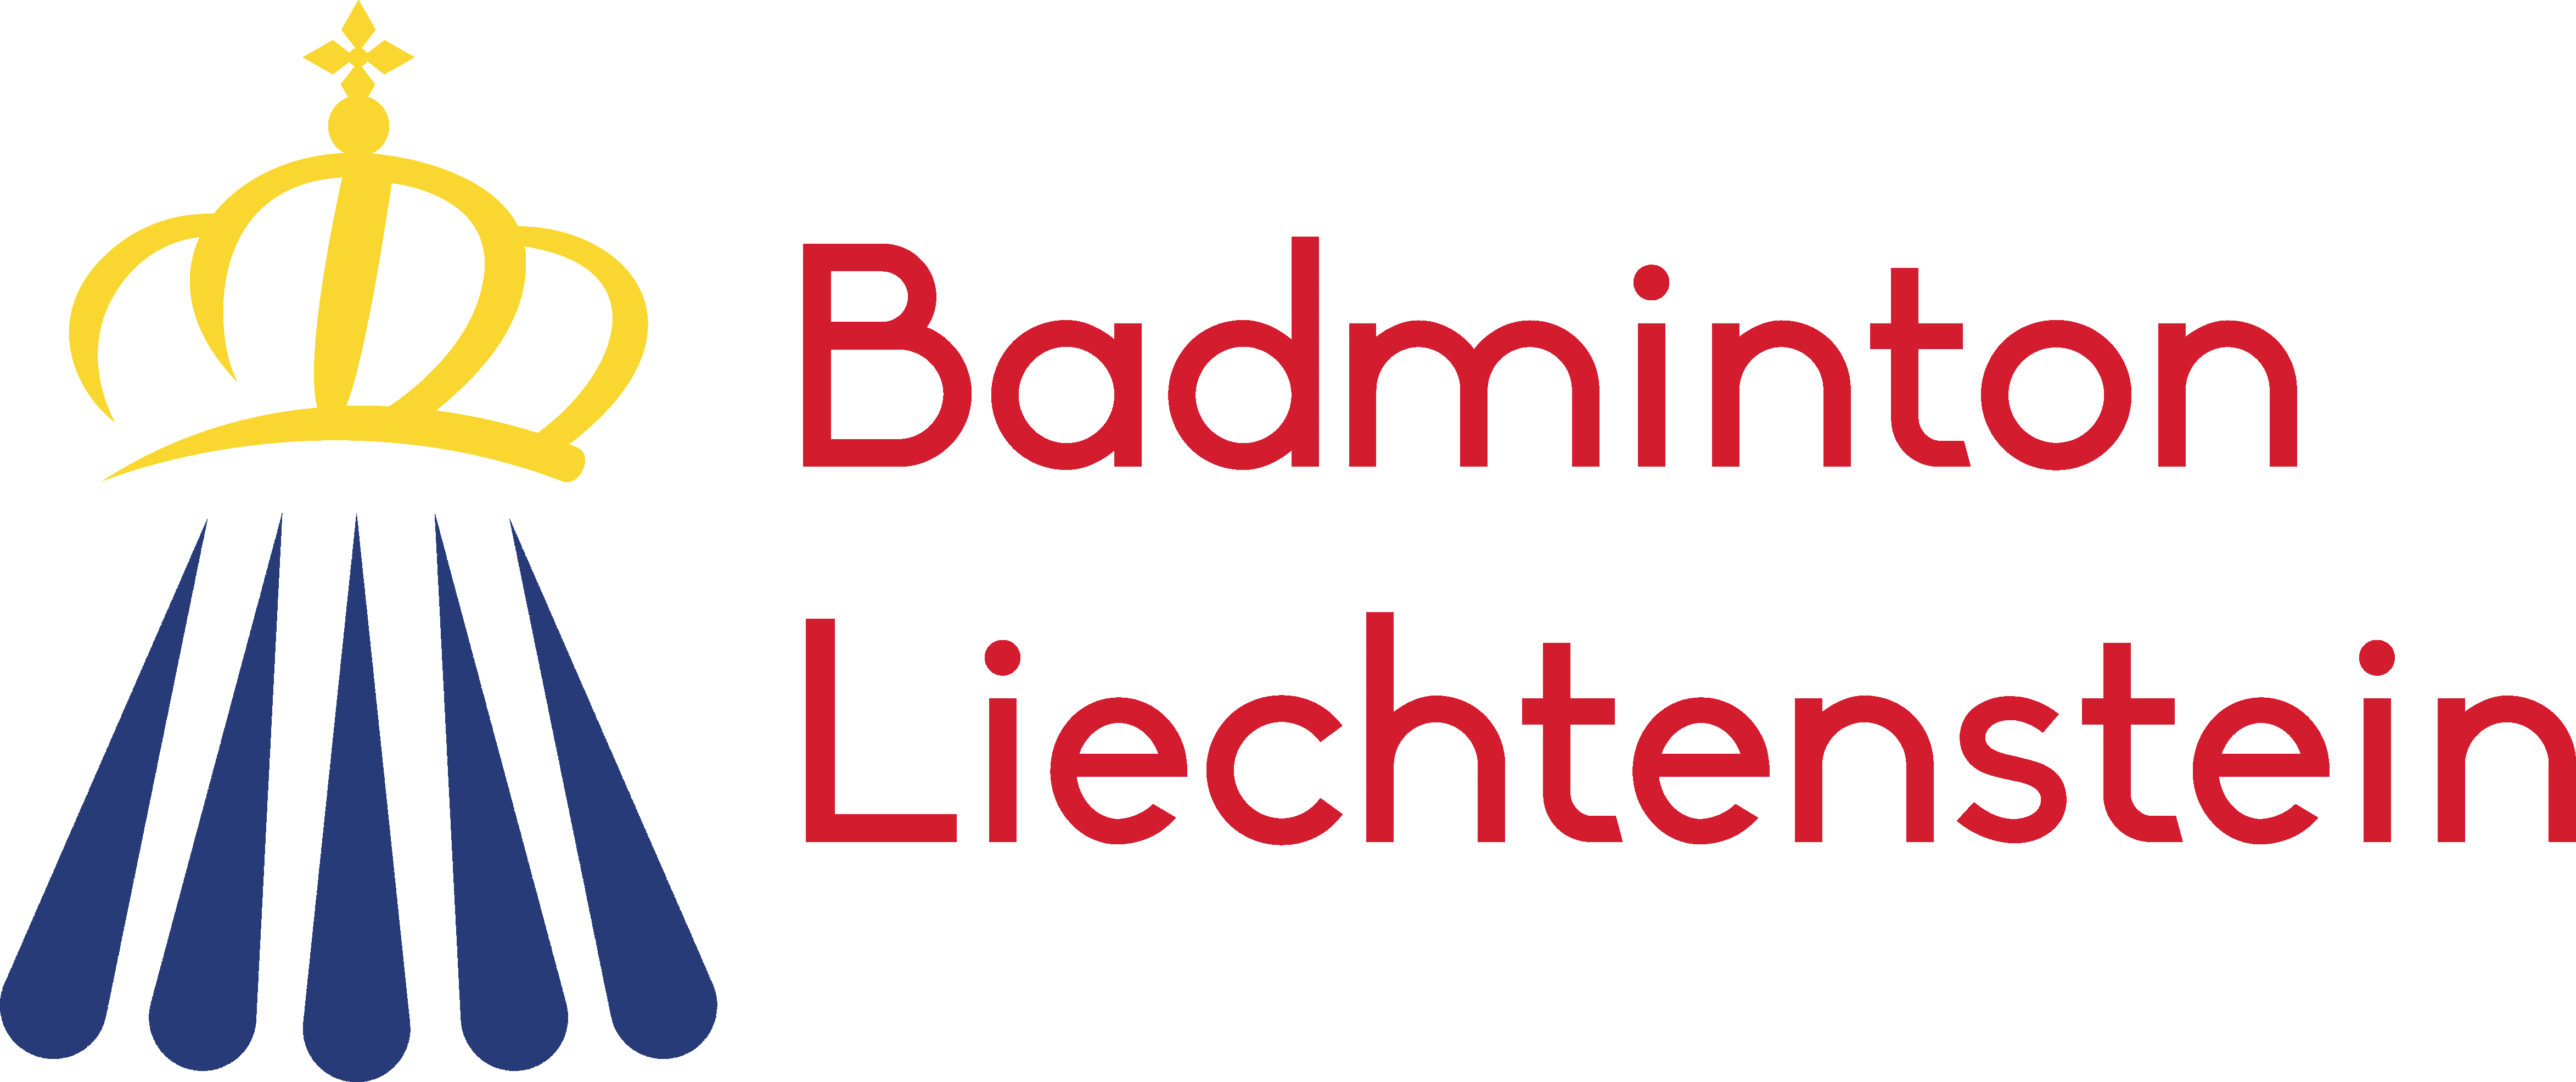 Badminton Verband Liechtenstein